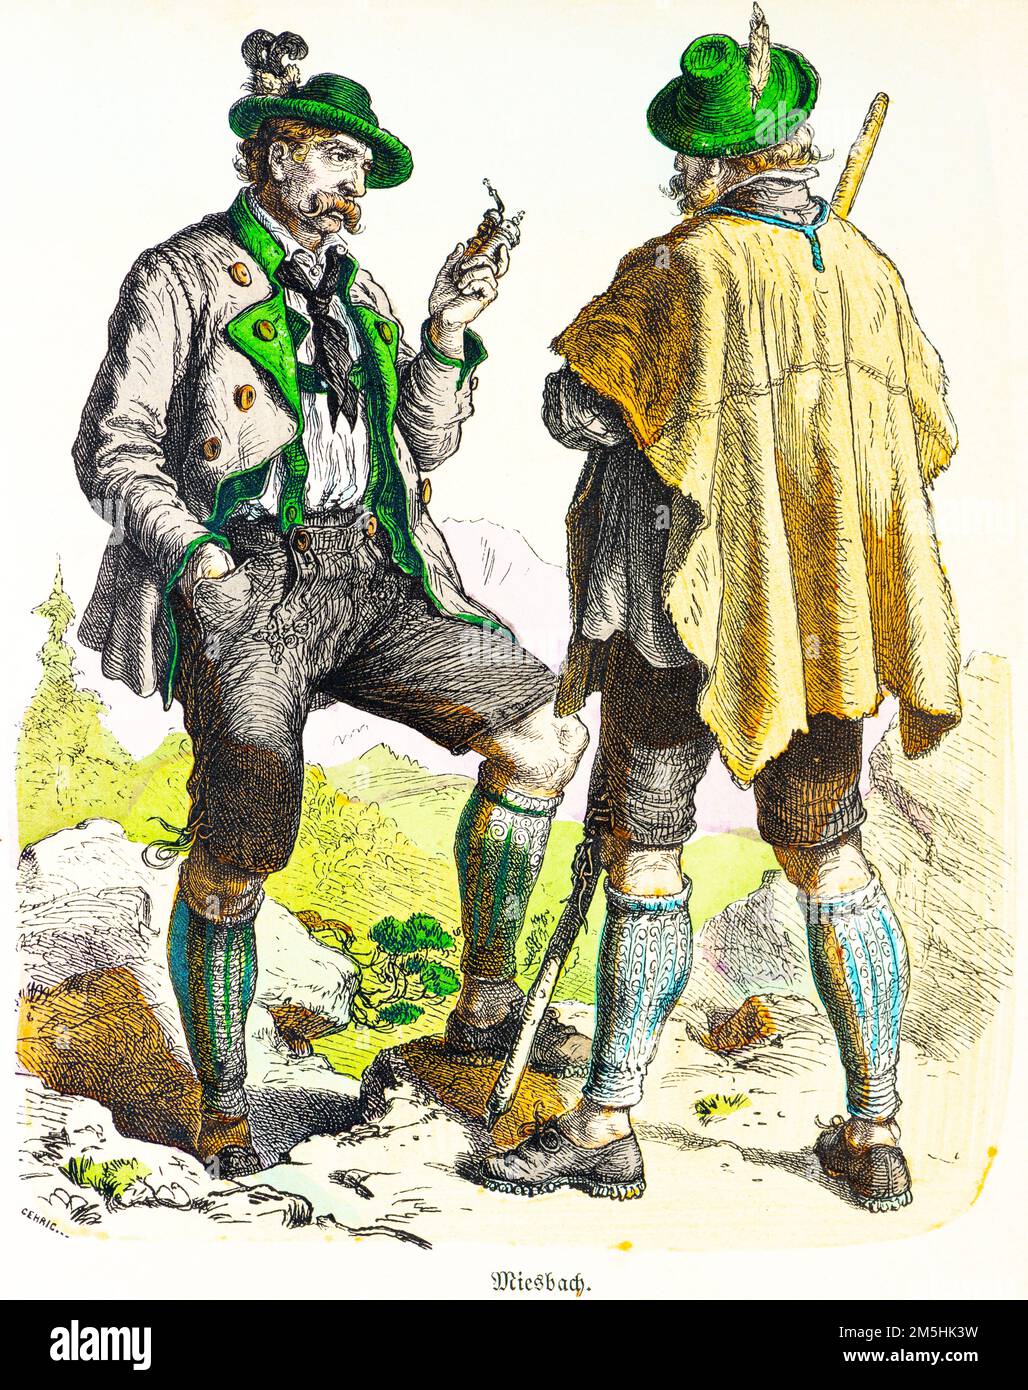 Traditionelle Kostüme von Miesbach, Bayern, Süddeutschland, 19. Jahrhundert, kreierte historische Illustration 1890, Münchener Bilderbogen 1890 Stockfoto